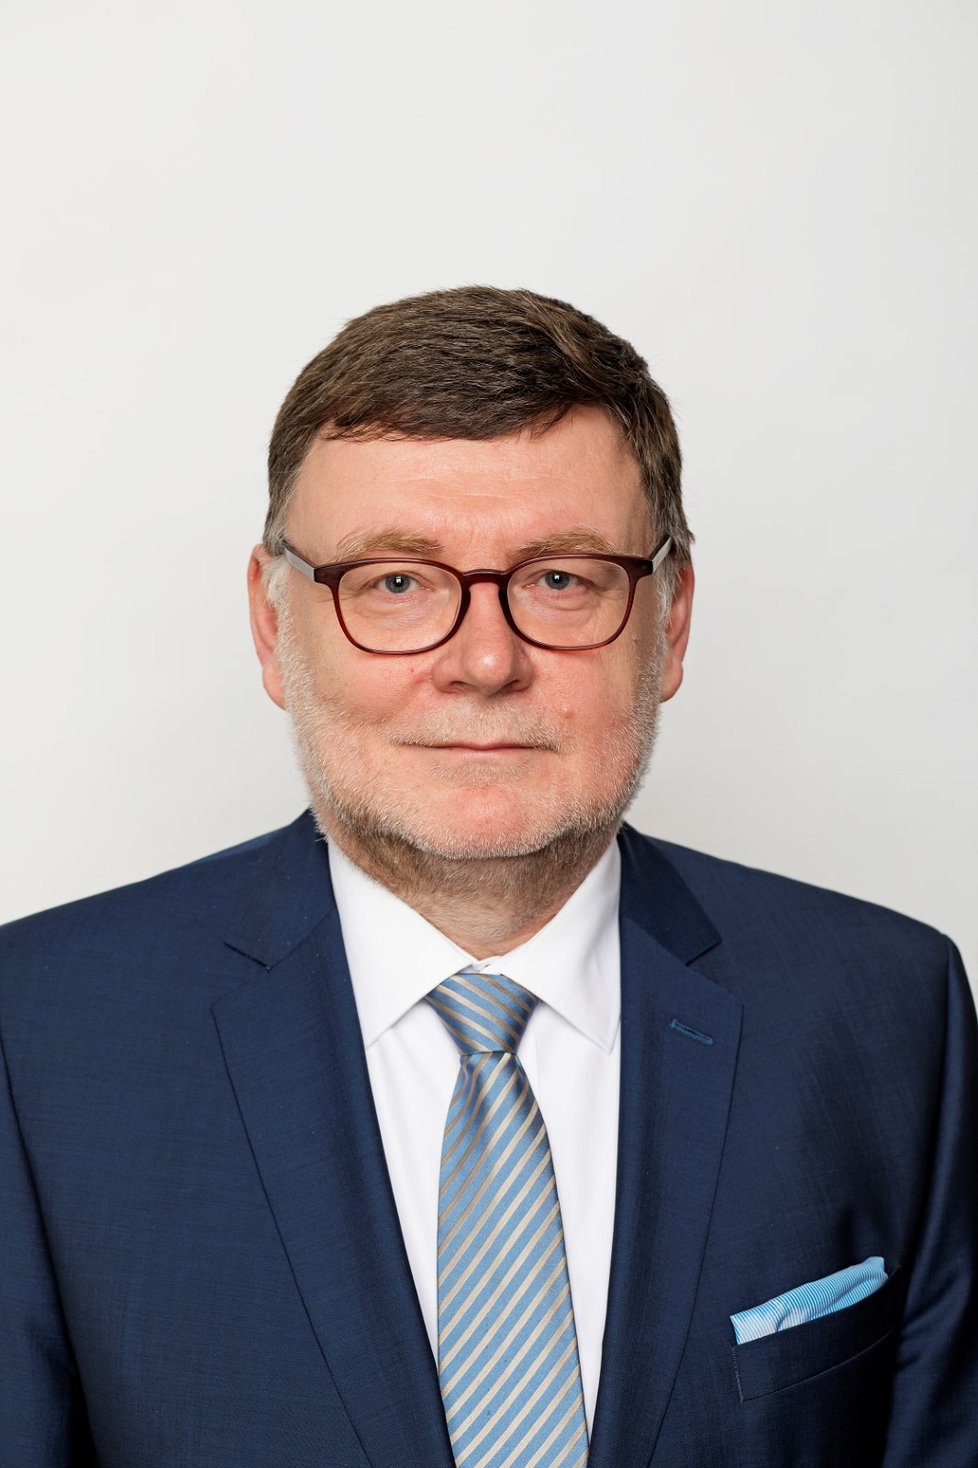 Poslanec Zbyněk Stanjura (ODS) zvolený 9. 10. 2021